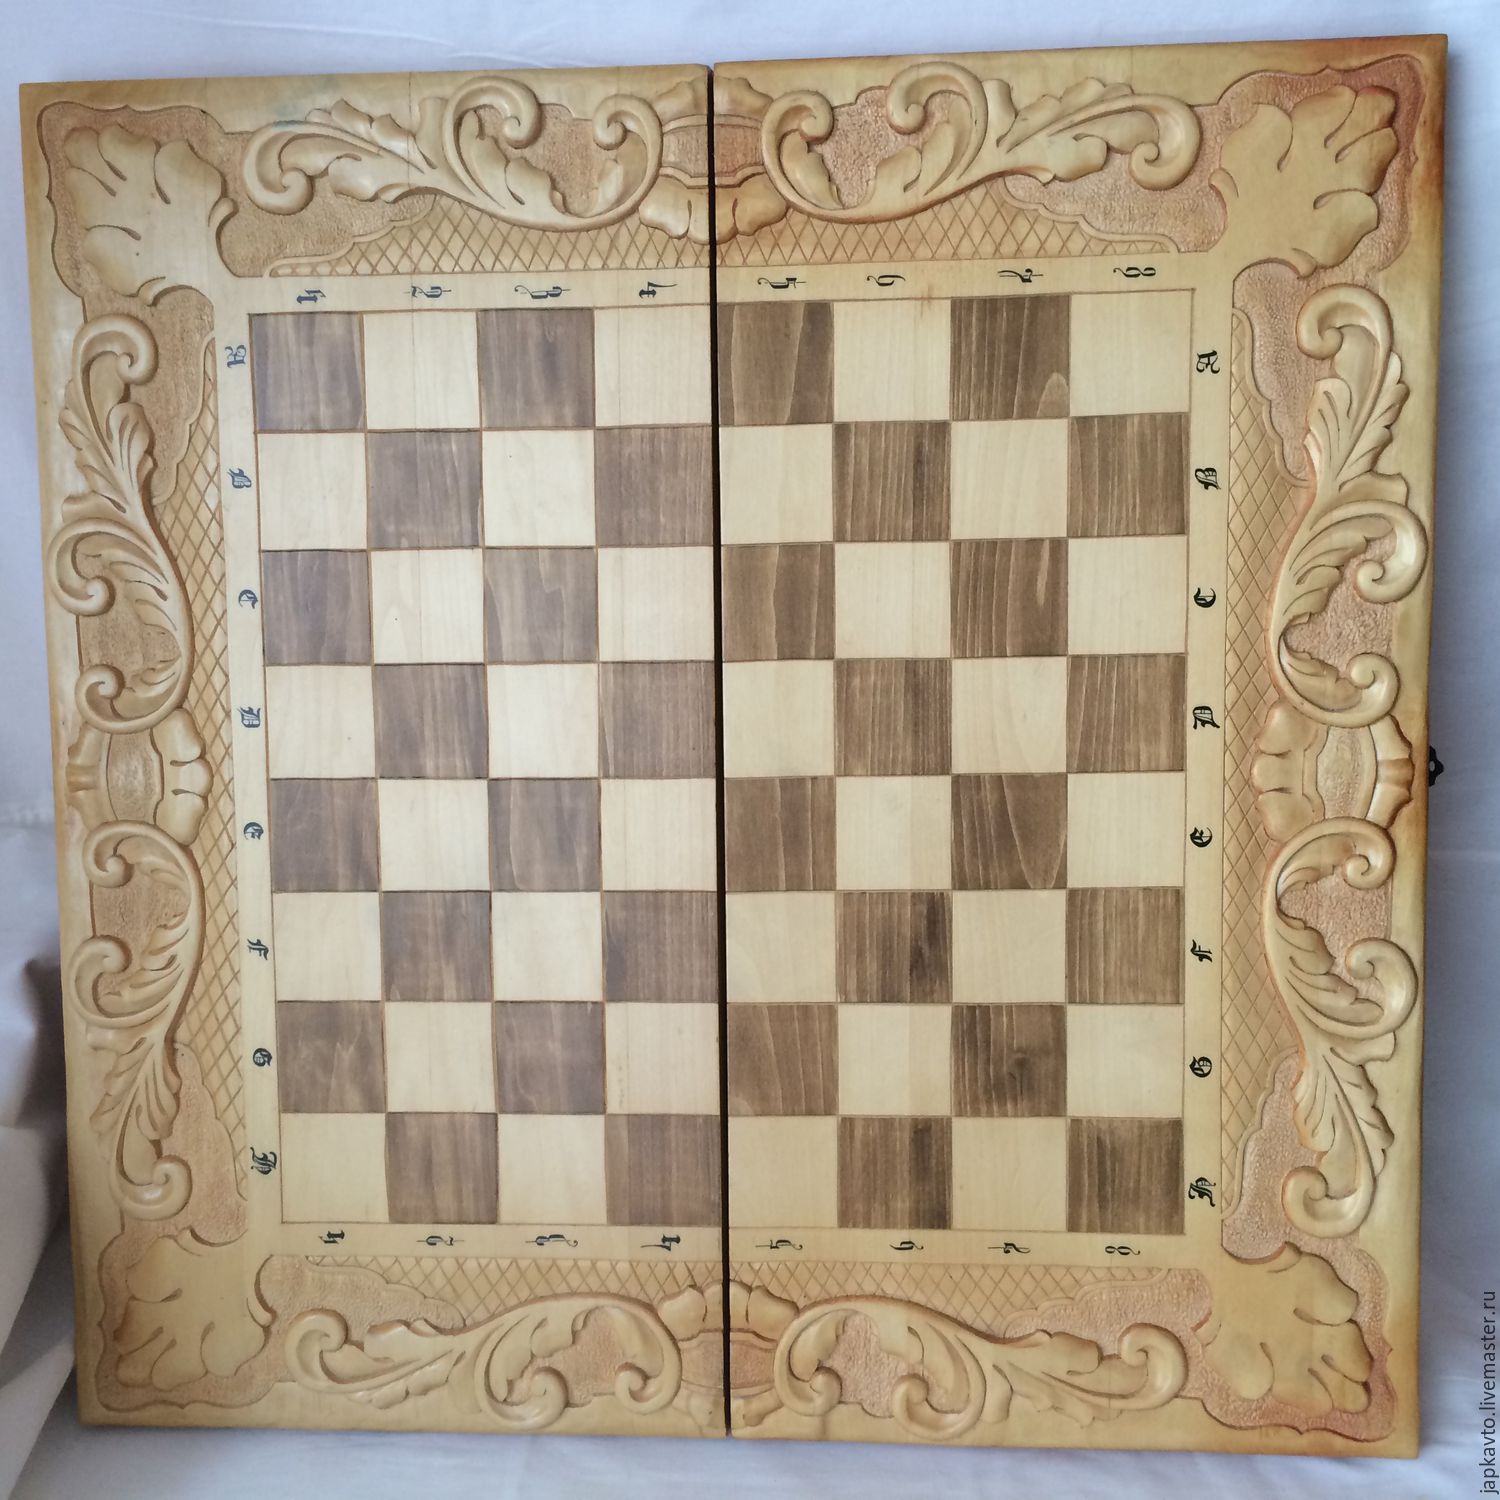 Варианты шахматной доски. Нарды-шашки "Лео" 25 (№ 4). Резная шахматная доска. Шахматная доска резьба. Шахматная доска резная из дерева.